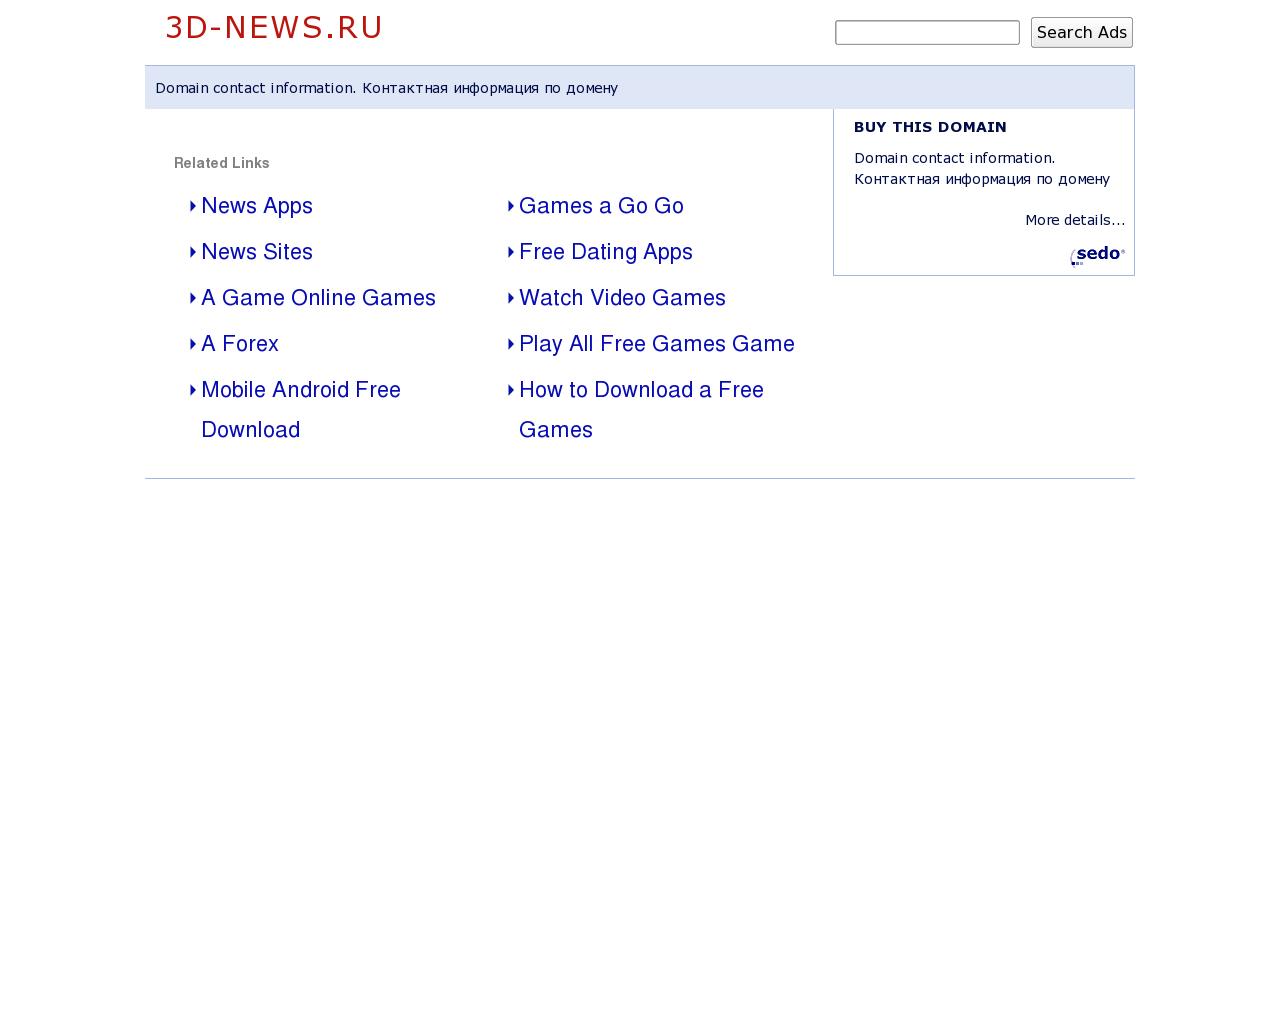 Изображение сайта 3d-news.ru в разрешении 1280x1024